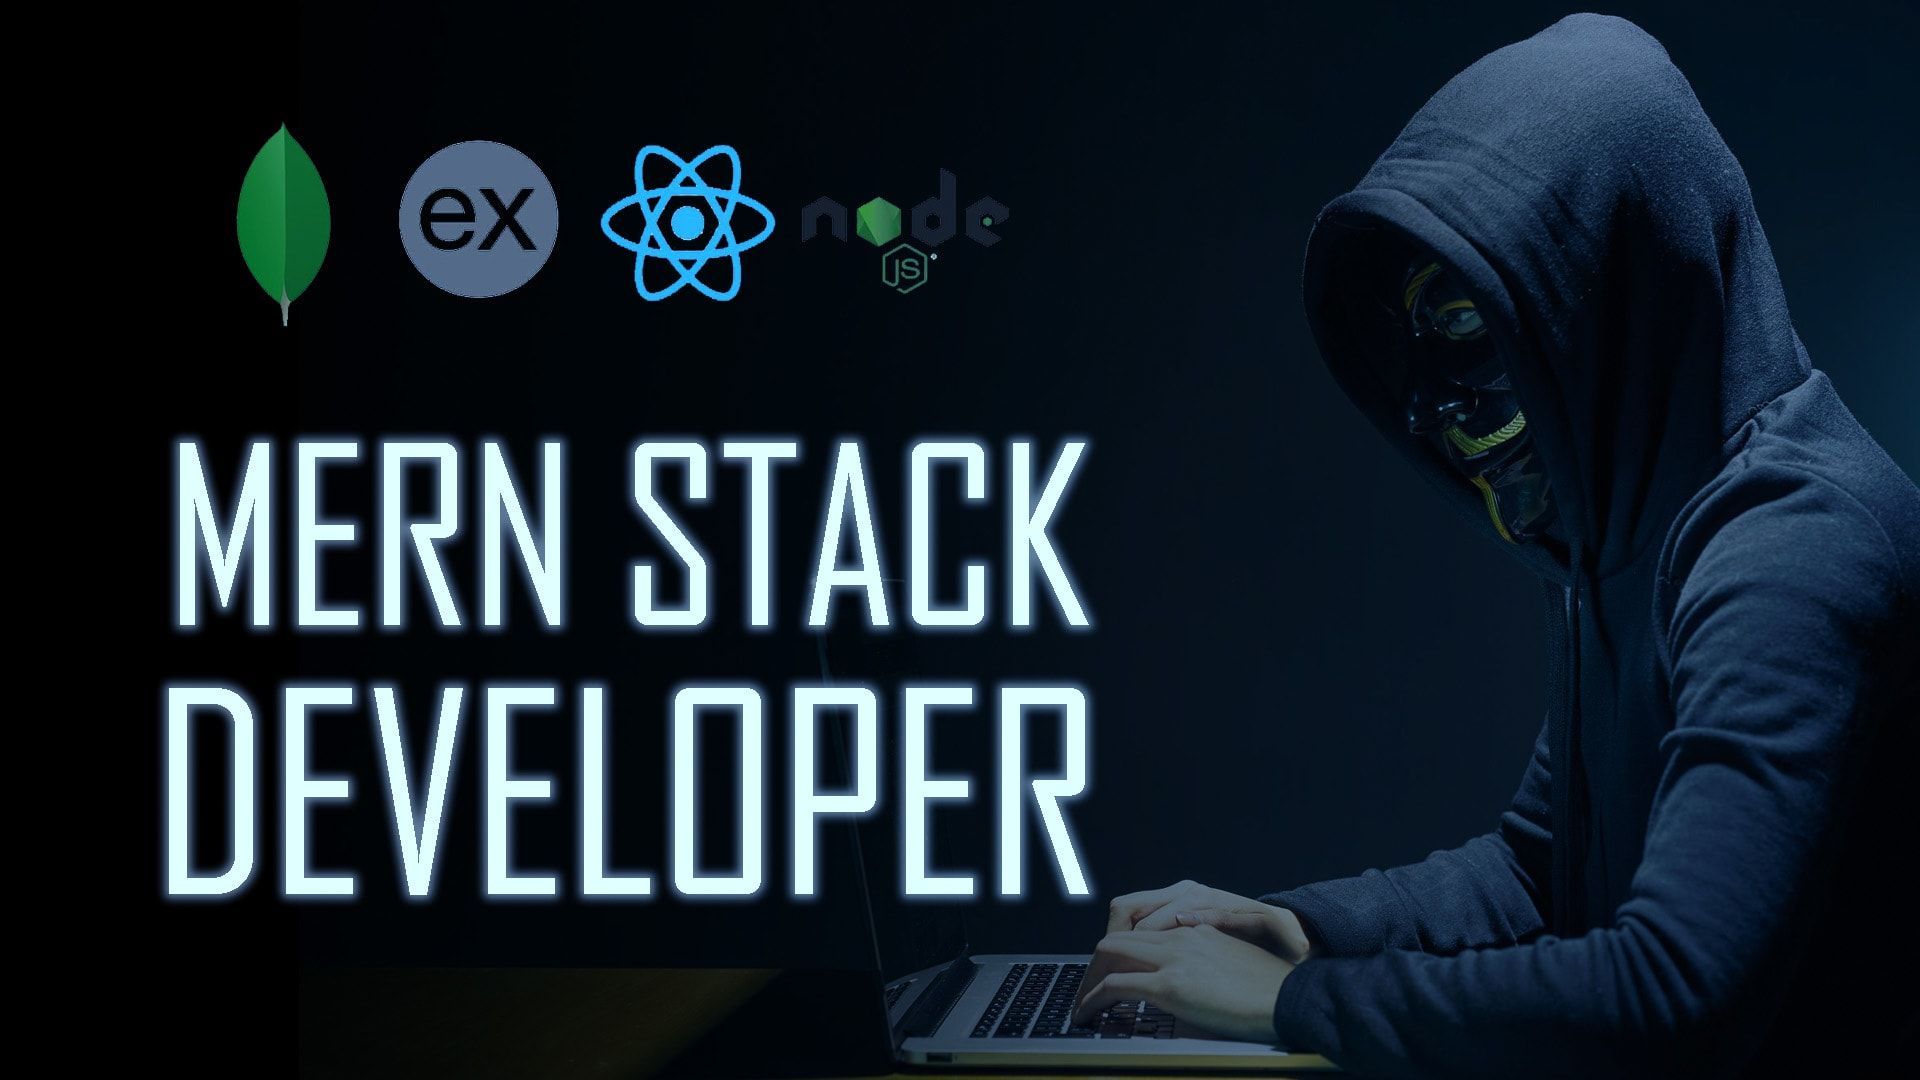 MERN Stack Developer